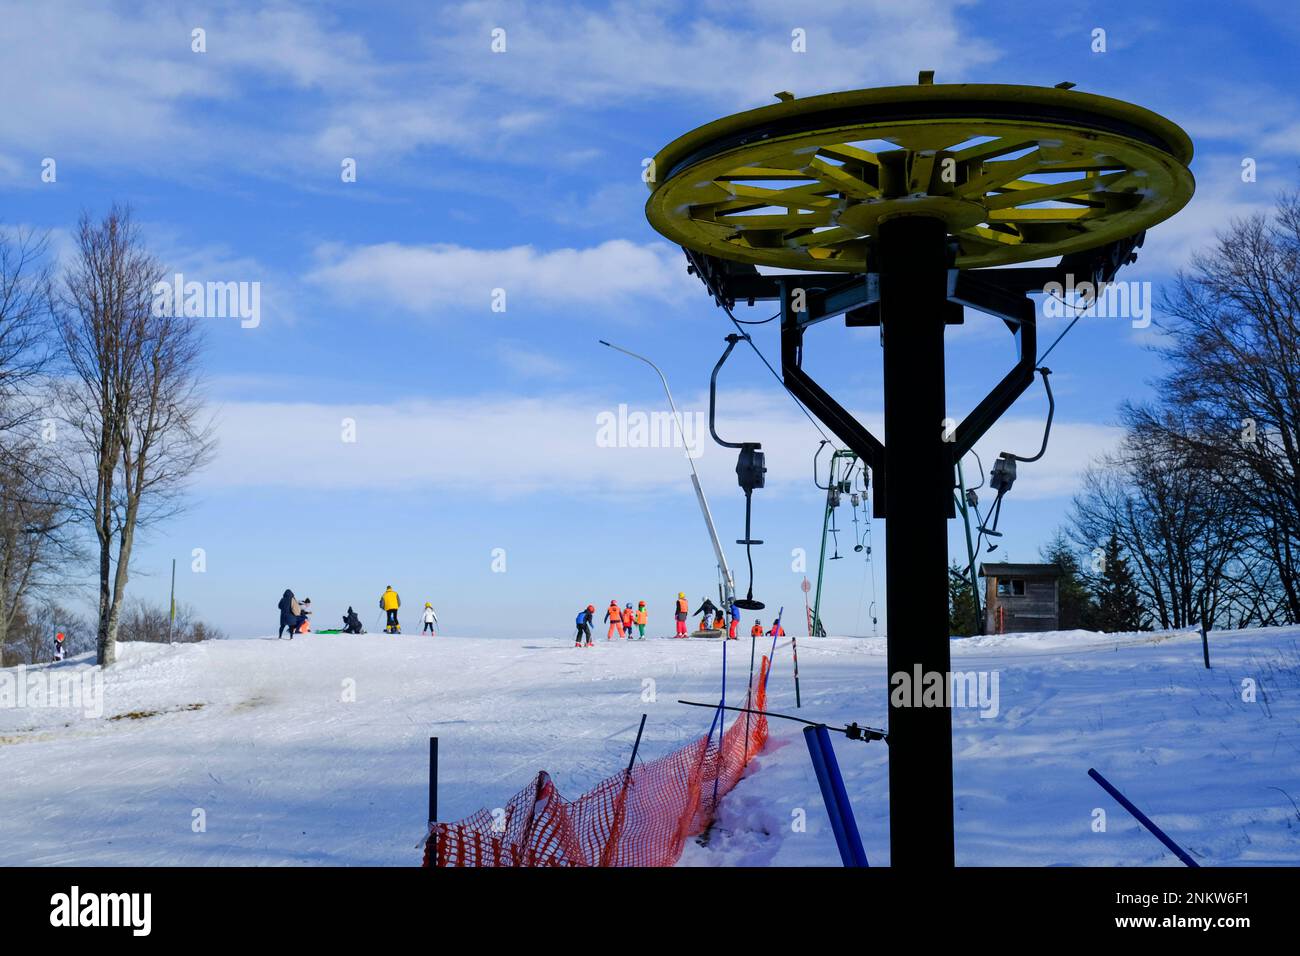 Gabelstapler im Winter in bunten Anzügen auf dem Gipfel der Berge. Schia, Parma, Emilia-Romagna, Italien. Winterurlaub Stockfoto